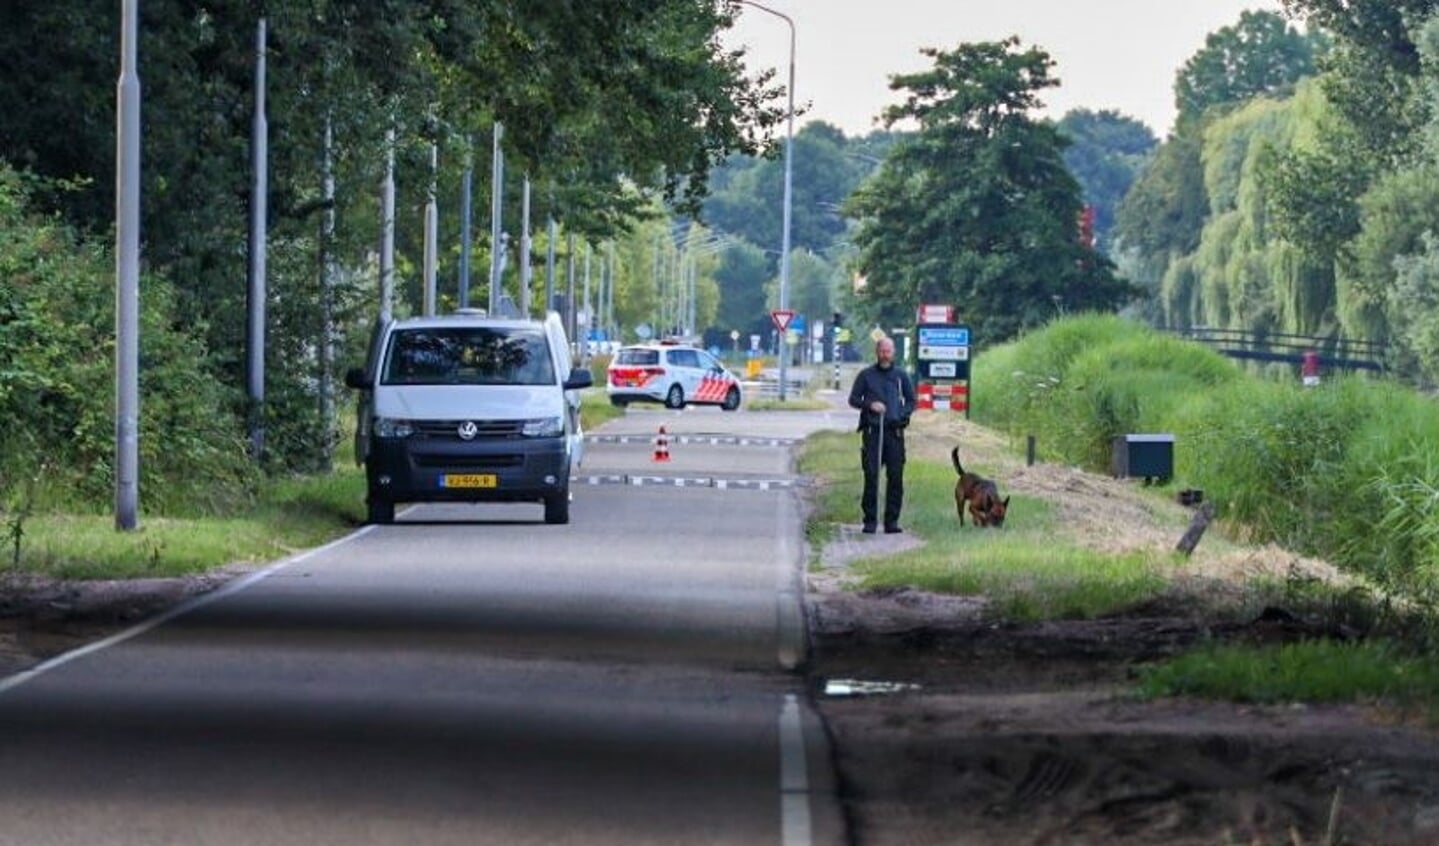 De politie doet onderzoek, nadat er naar een woning aan de Amsterdamsestraatweg een brandbom was gegooid en de bewoner achter de daders aan ging. Hierbij werden schoten gelost.